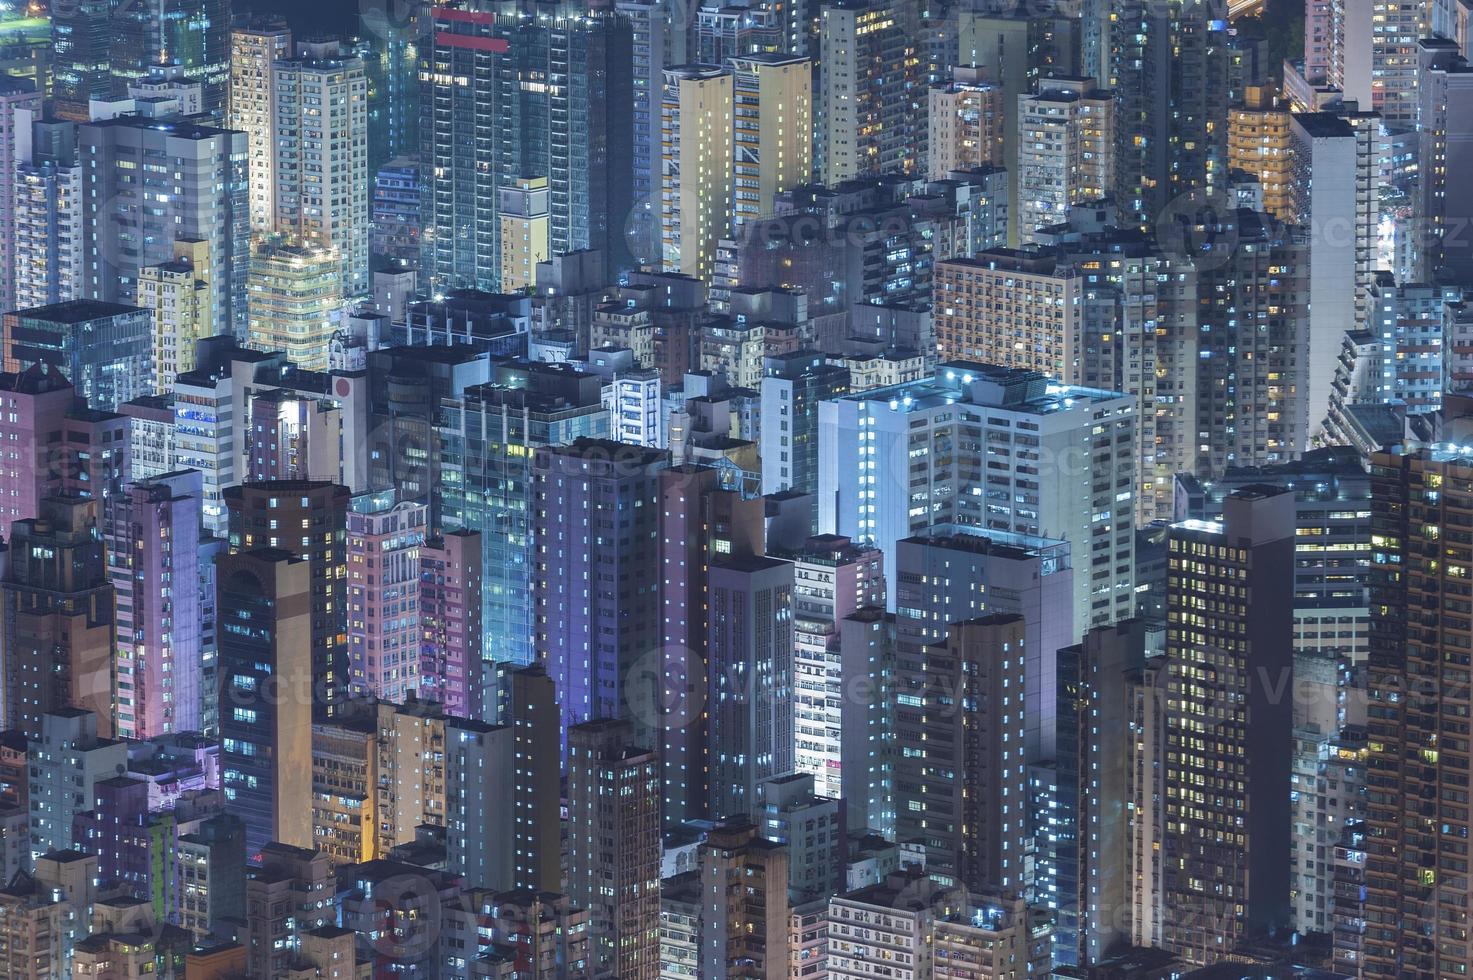 Hong Kong foto